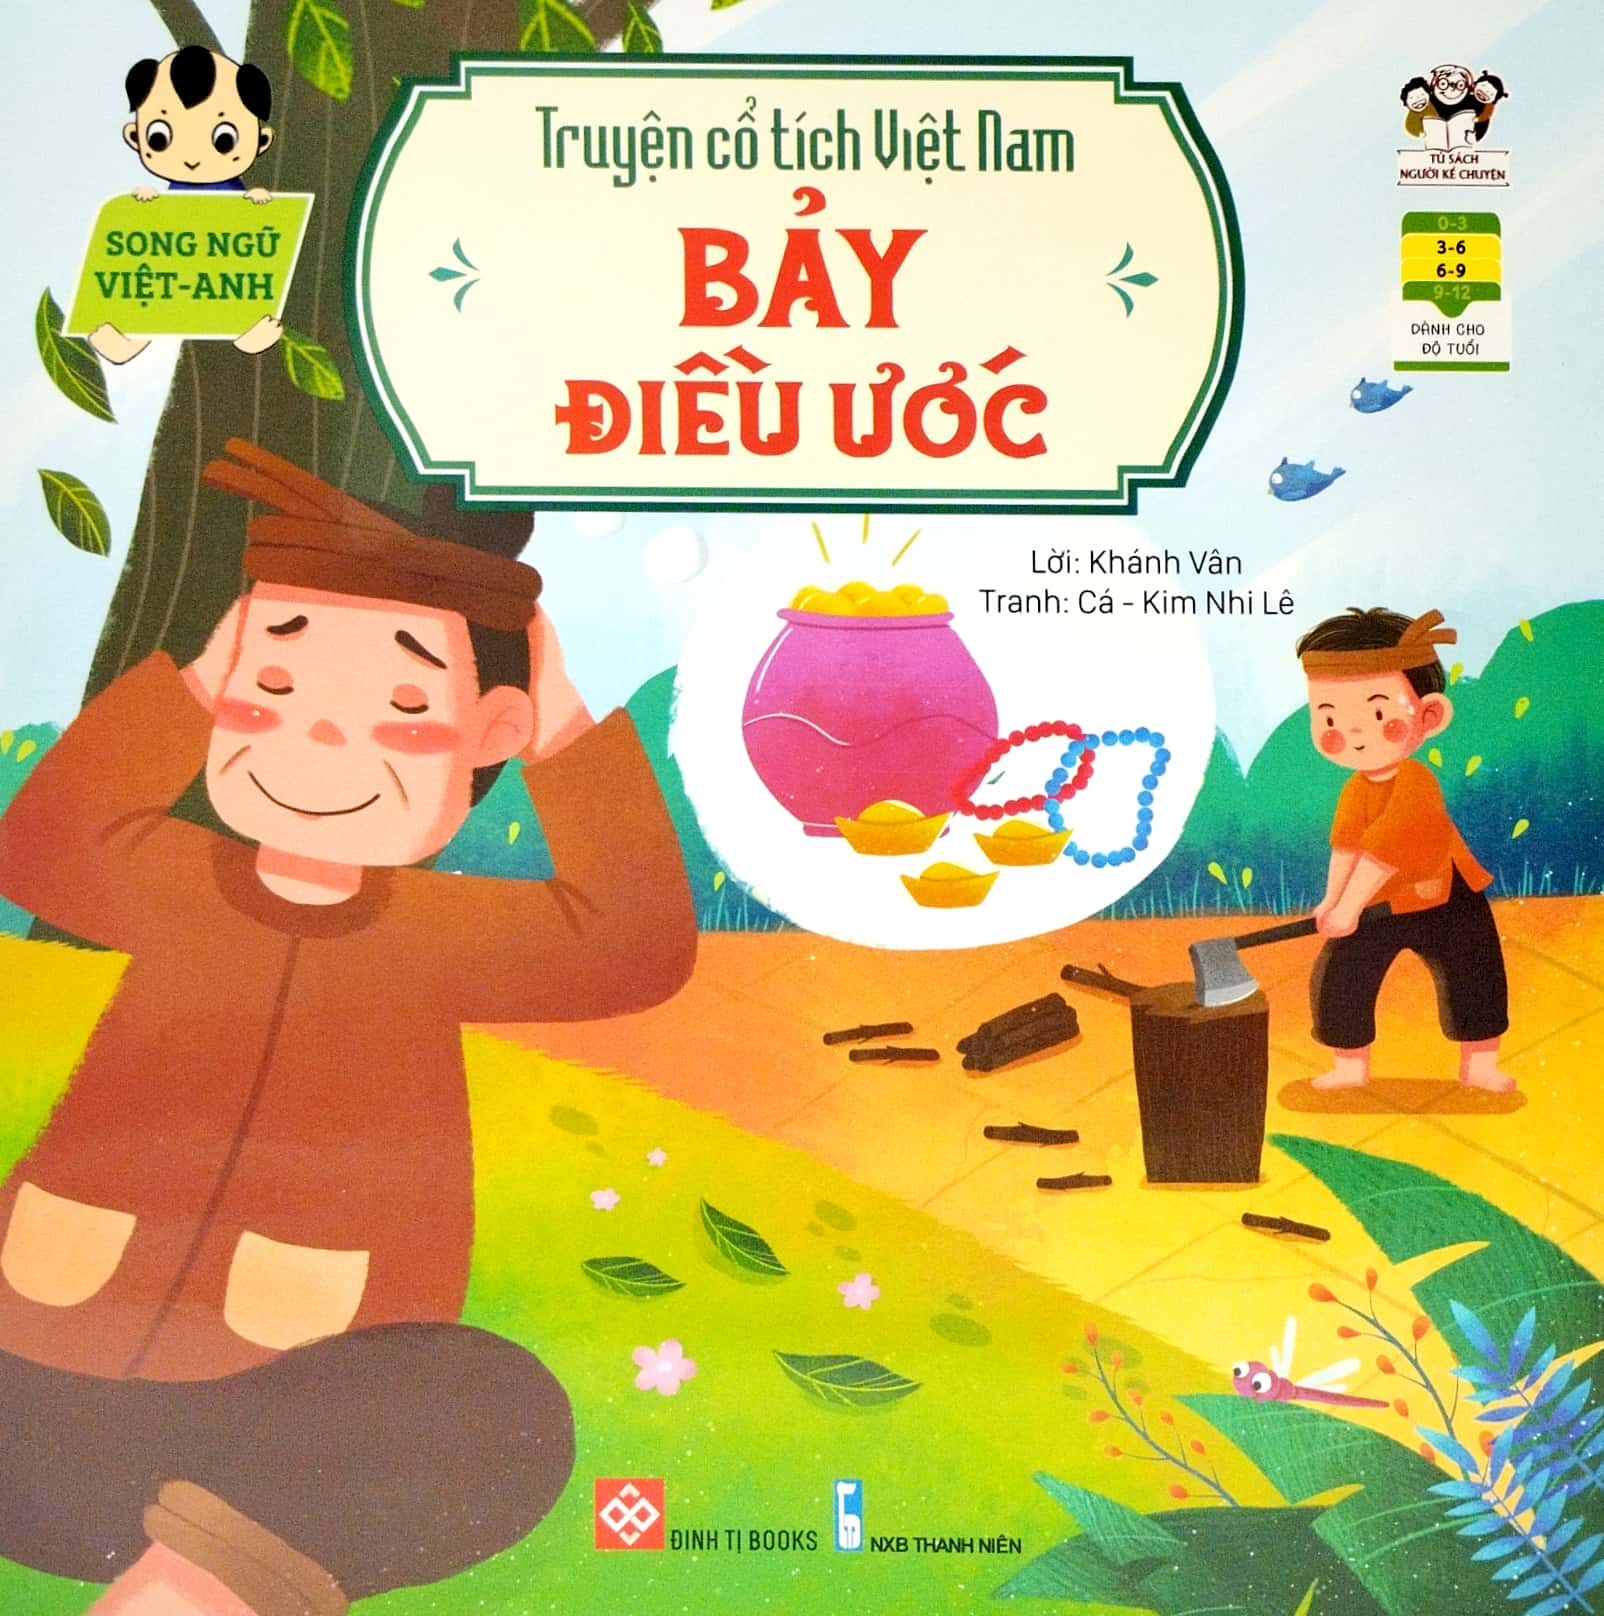 Bộ Sách Truyện Cổ Tích Việt Nam (Song Ngữ Việt-Anh) (Bộ 5 Cuốn Phần 2)